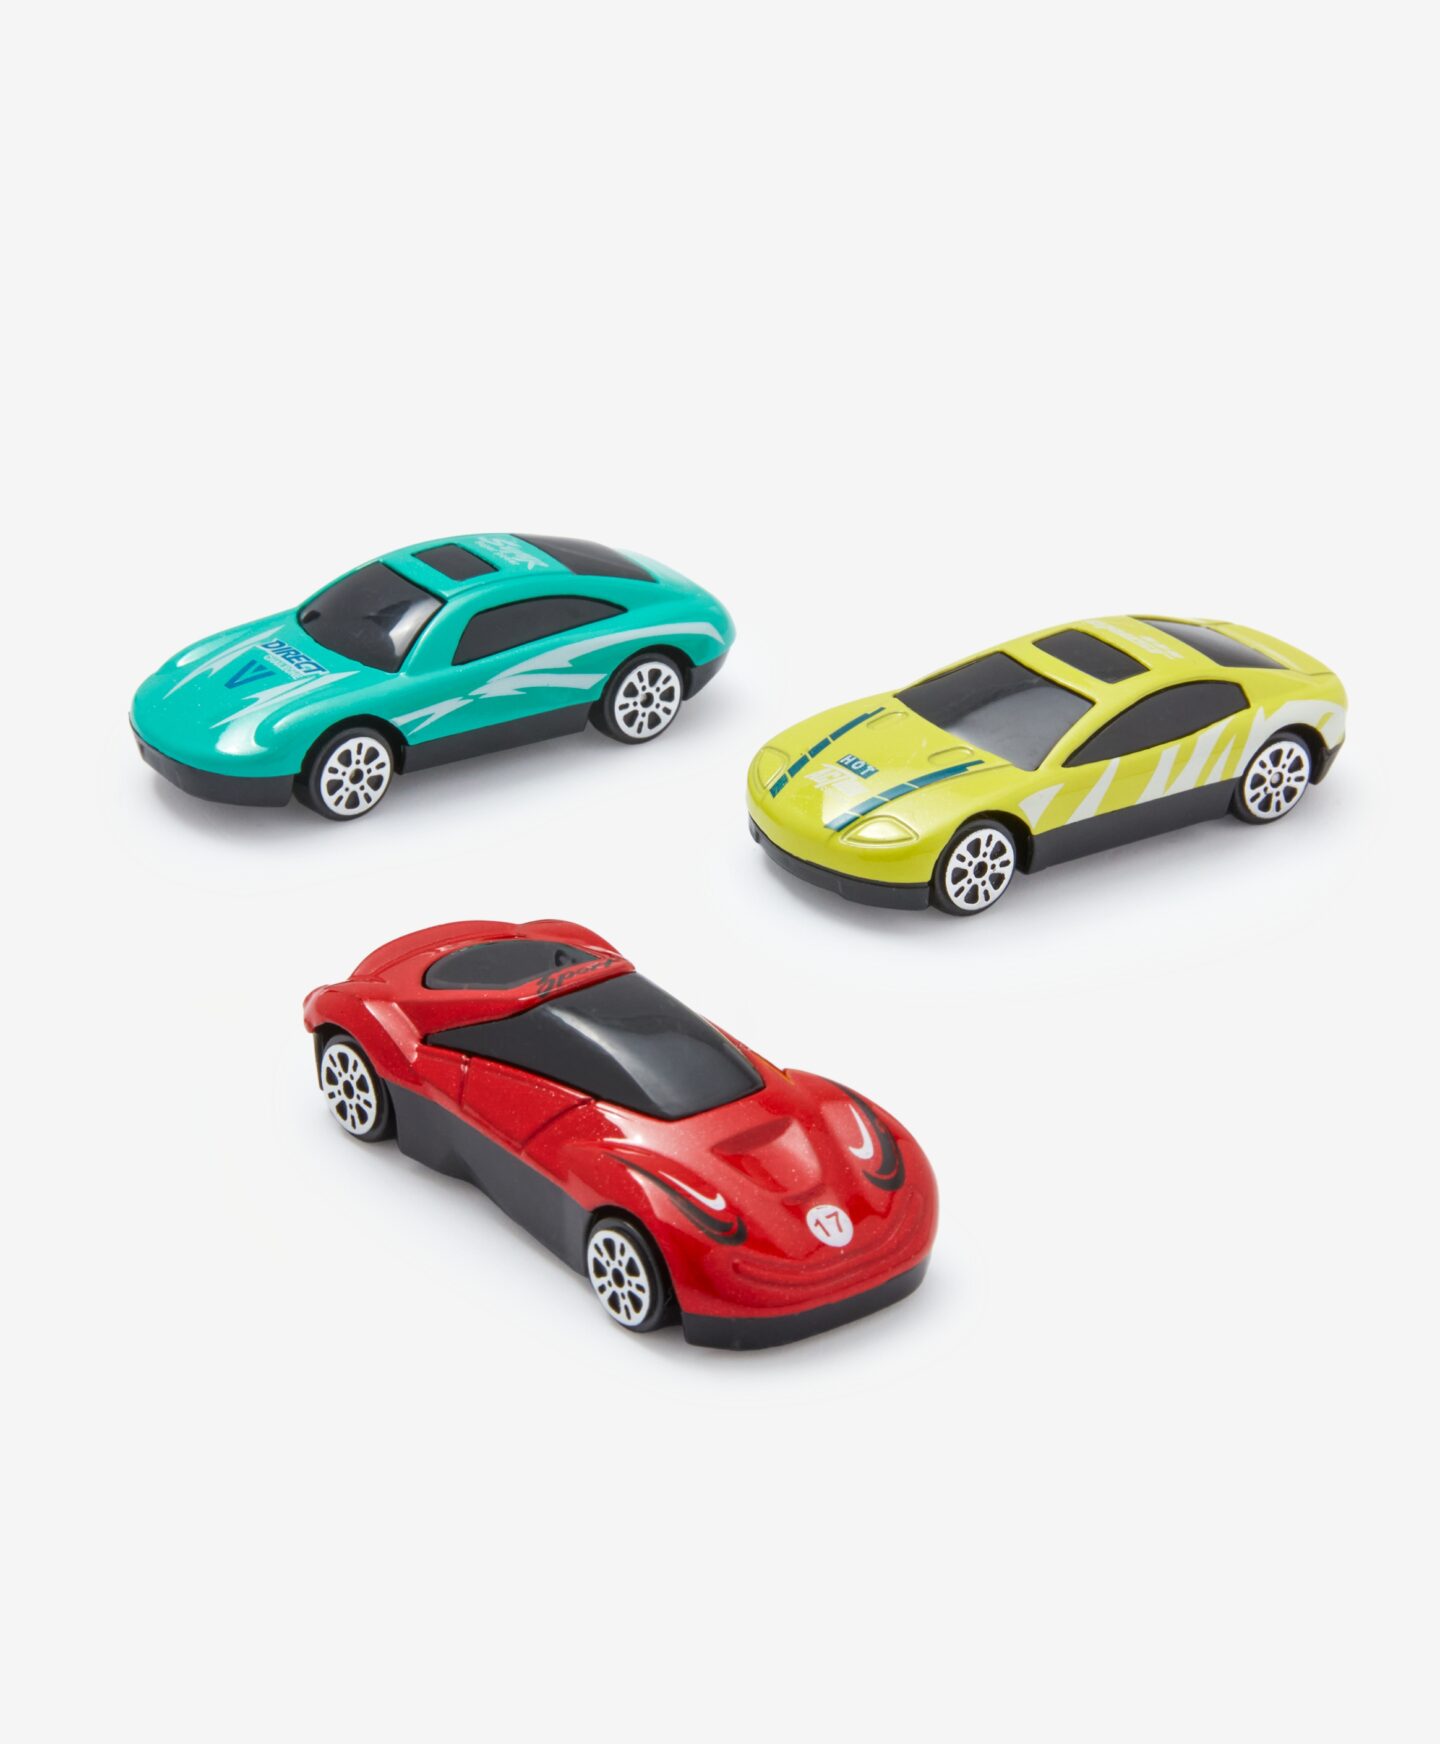 Σετ 3 αυτοκινήτων κλίμακας 1:72, διάφορα χρώματα, 7,6 cm